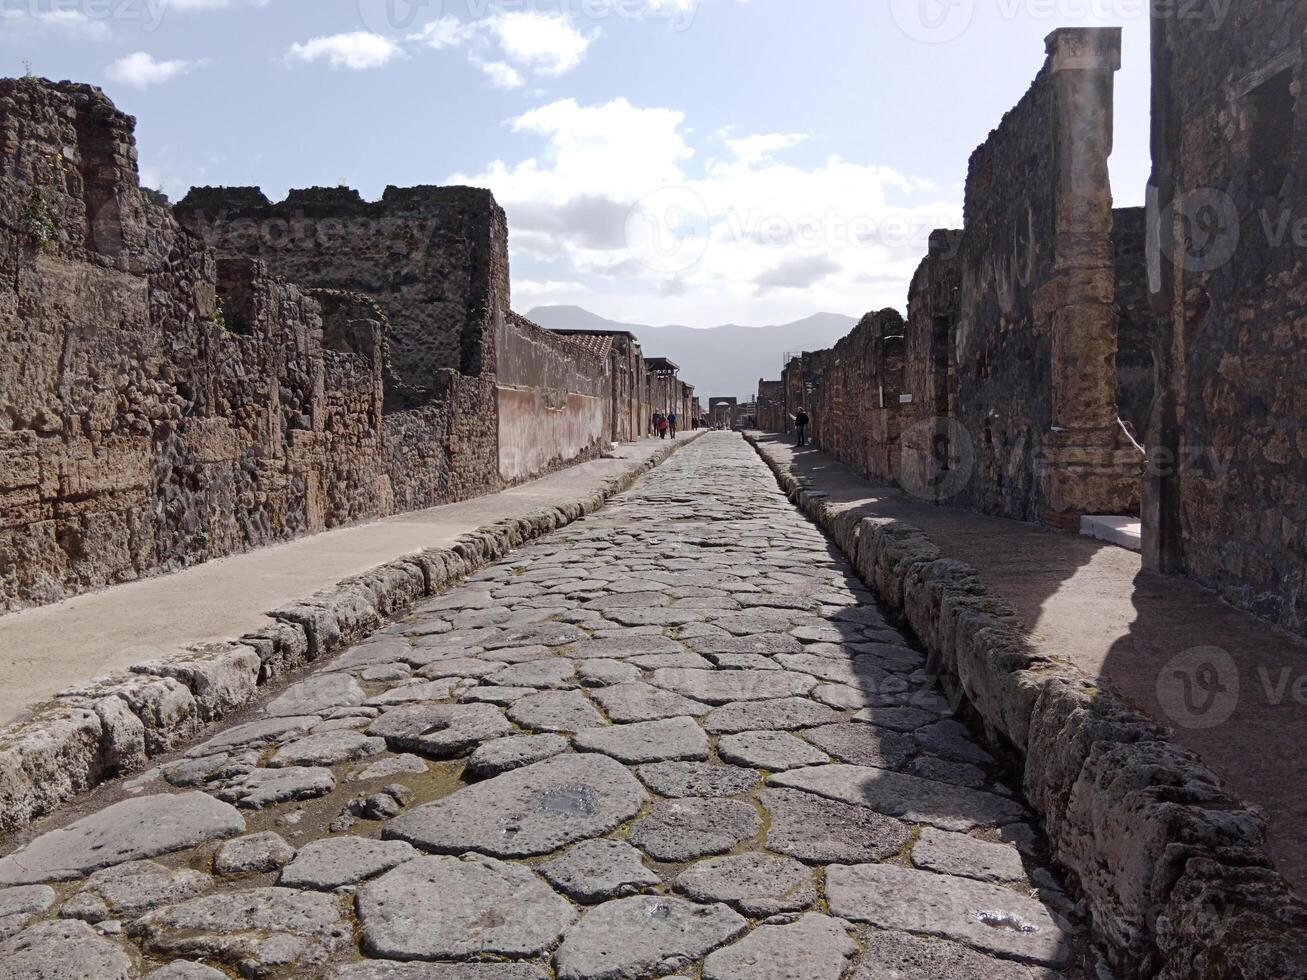 pompei, de oude Romeins stad begraven door de uitbarsting van monteren vesuvius, staat net zo een UNESCO wereld erfgoed plaats, aanbieden een uniek glimp in dagelijks leven gedurende de Romeins rijk. foto